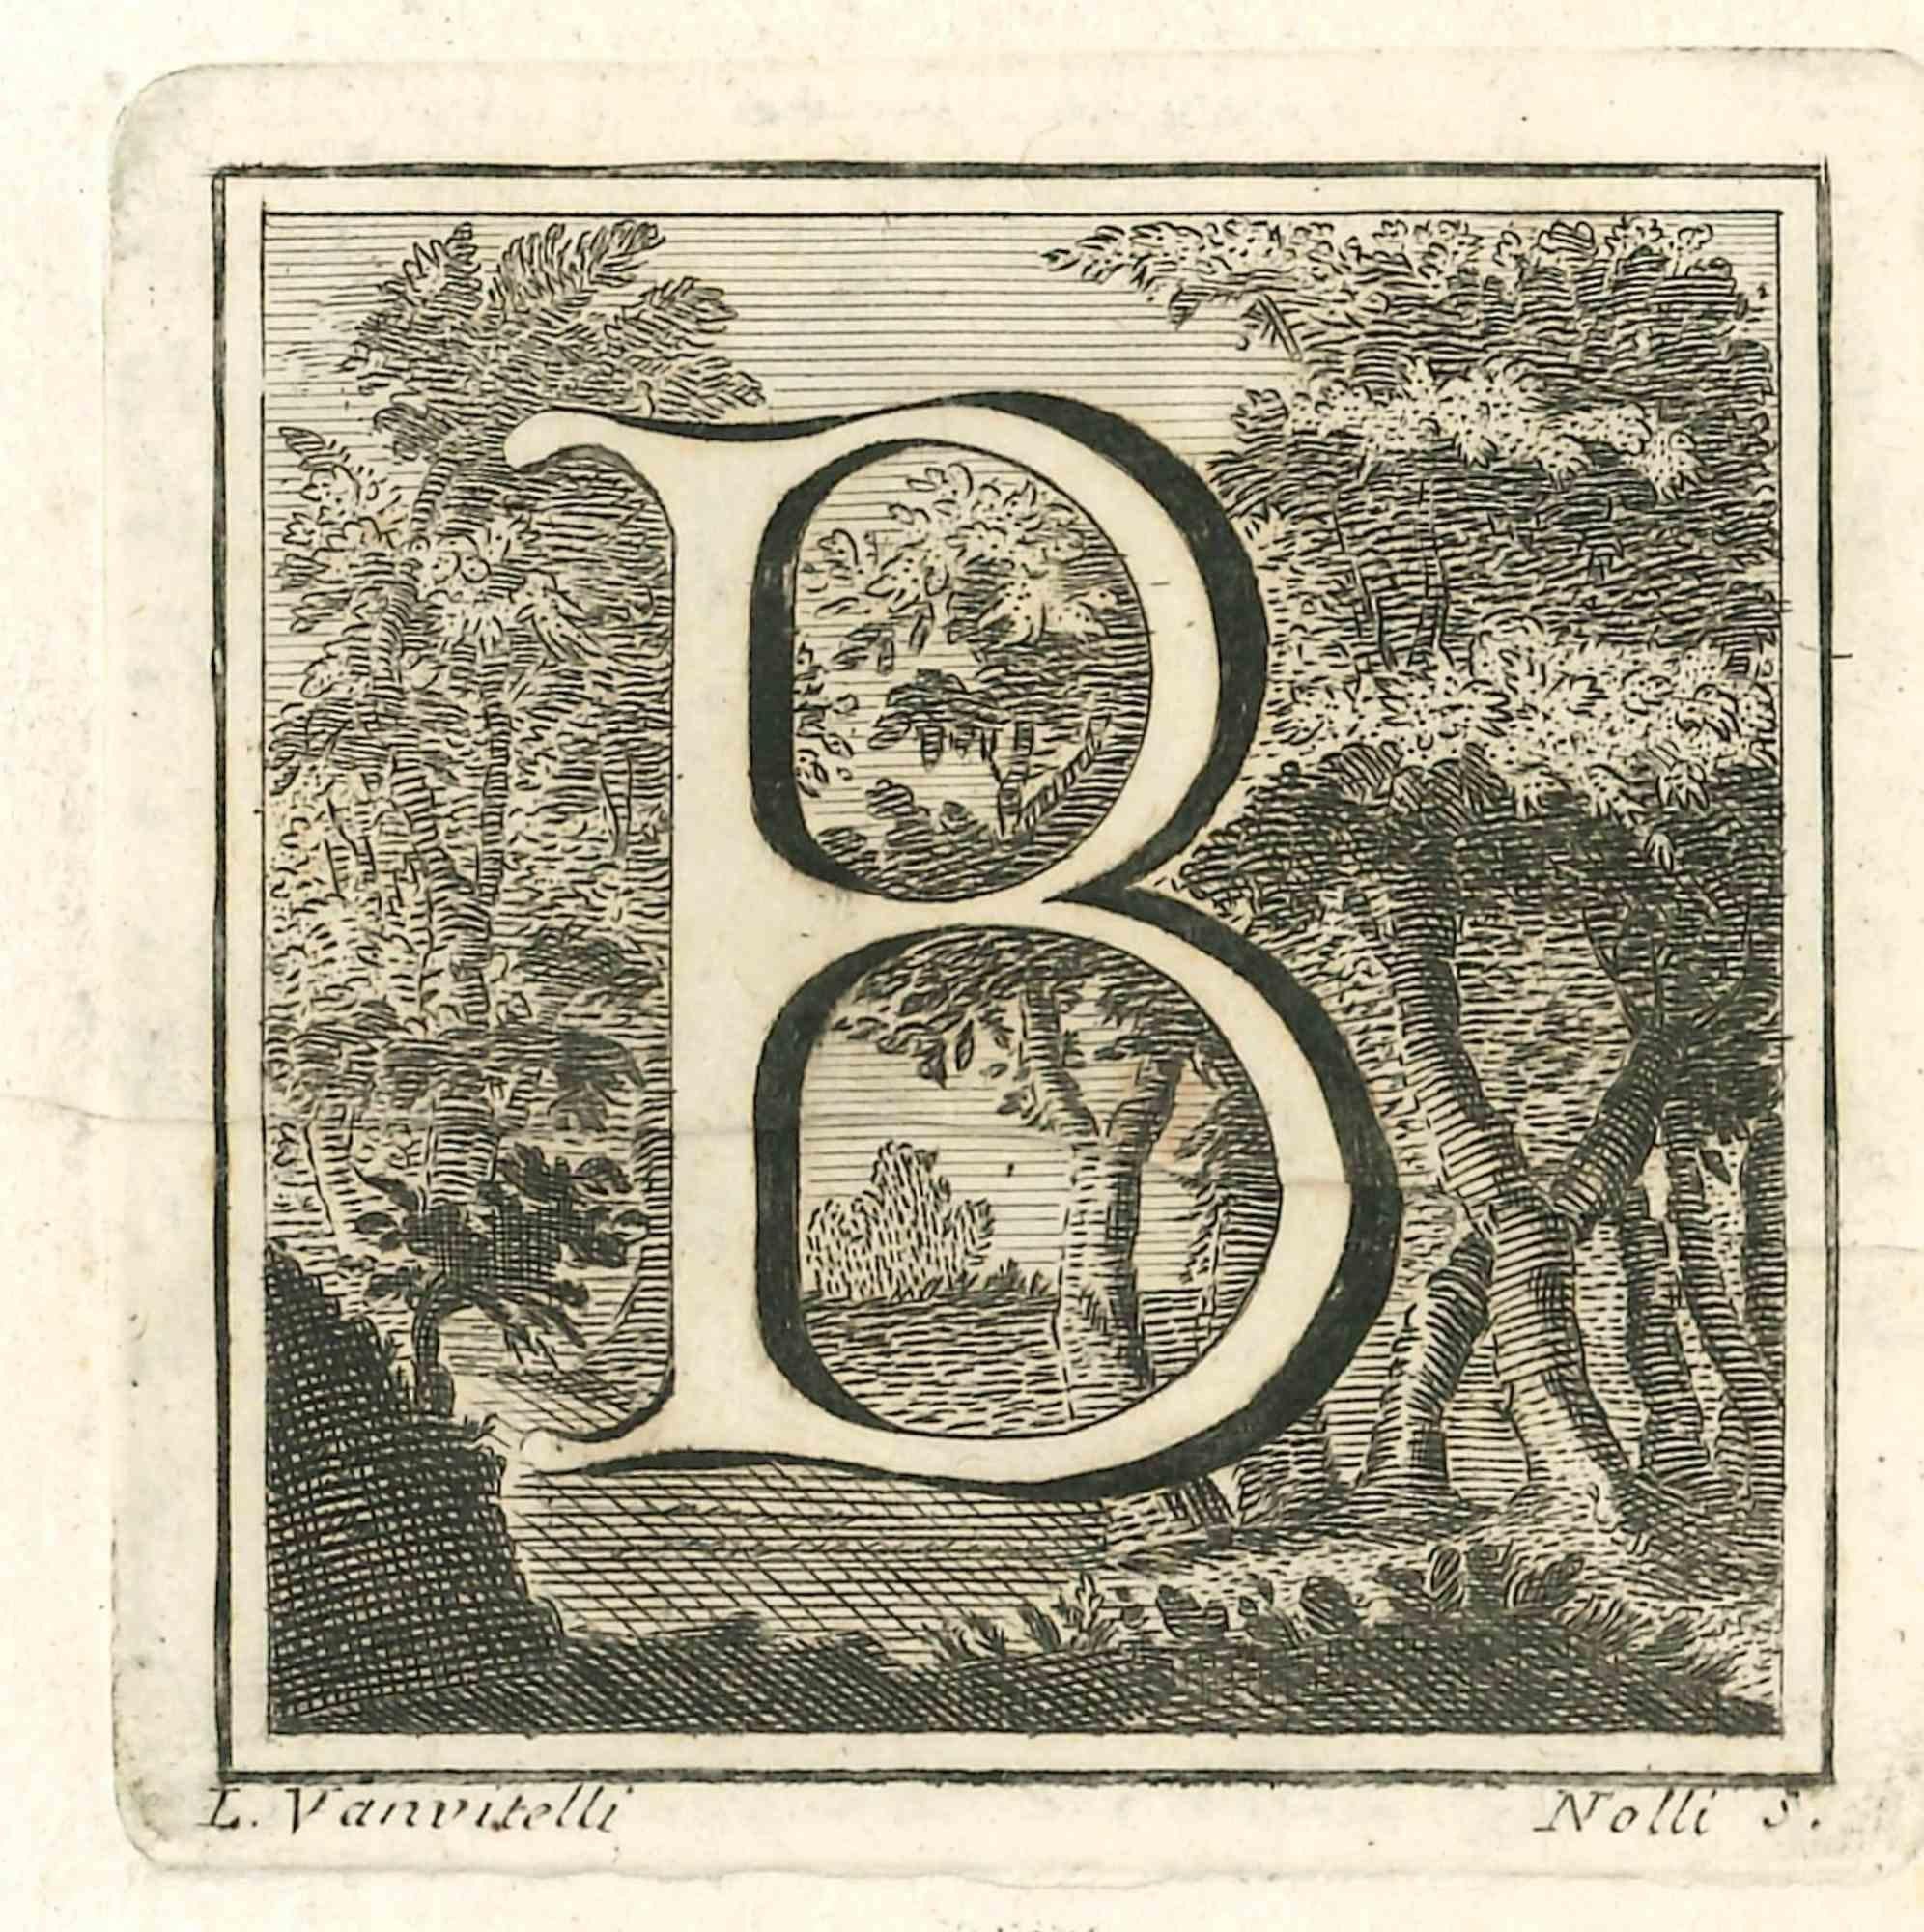 Lettre de l'alphabet B,  de la série "Antiquités d'Herculanum", est une gravure sur papier réalisée par Luigi Vanvitelli au 18ème siècle.

Bonnes conditions.

La gravure appartient à la suite d'estampes "Antiquités d'Herculanum exposées" (titre